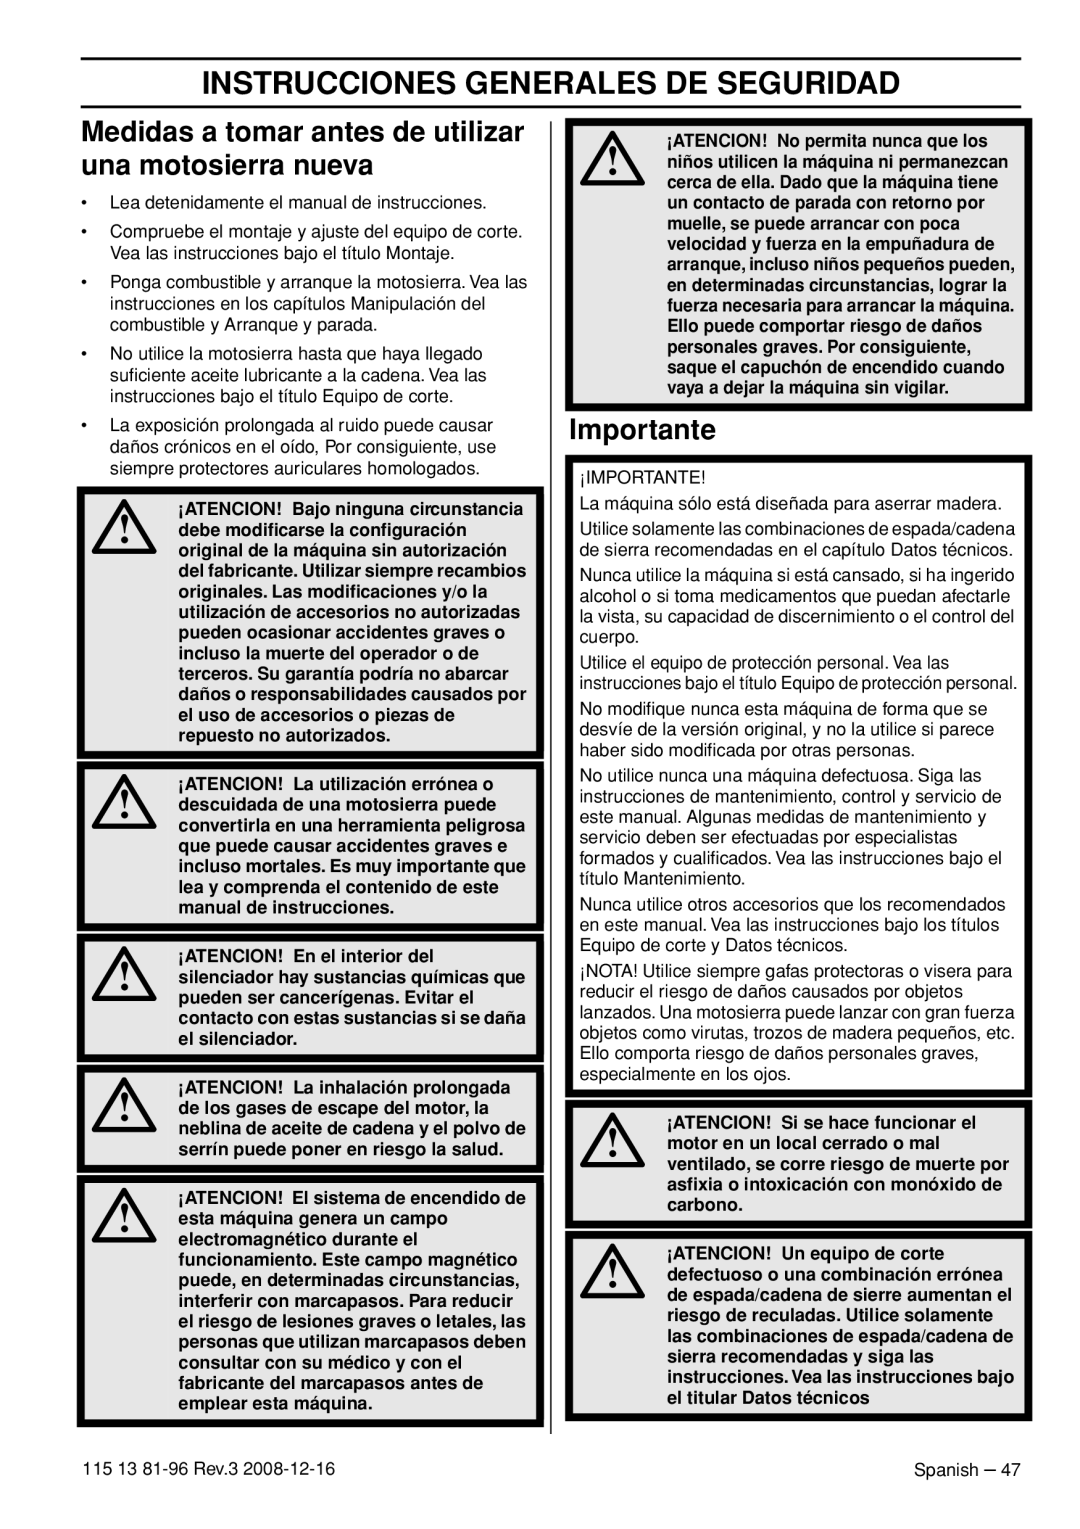 Husqvarna 115 13 81-96 manual Instrucciones Generales De Seguridad, Medidas a tomar antes de utilizar una motosierra nueva 